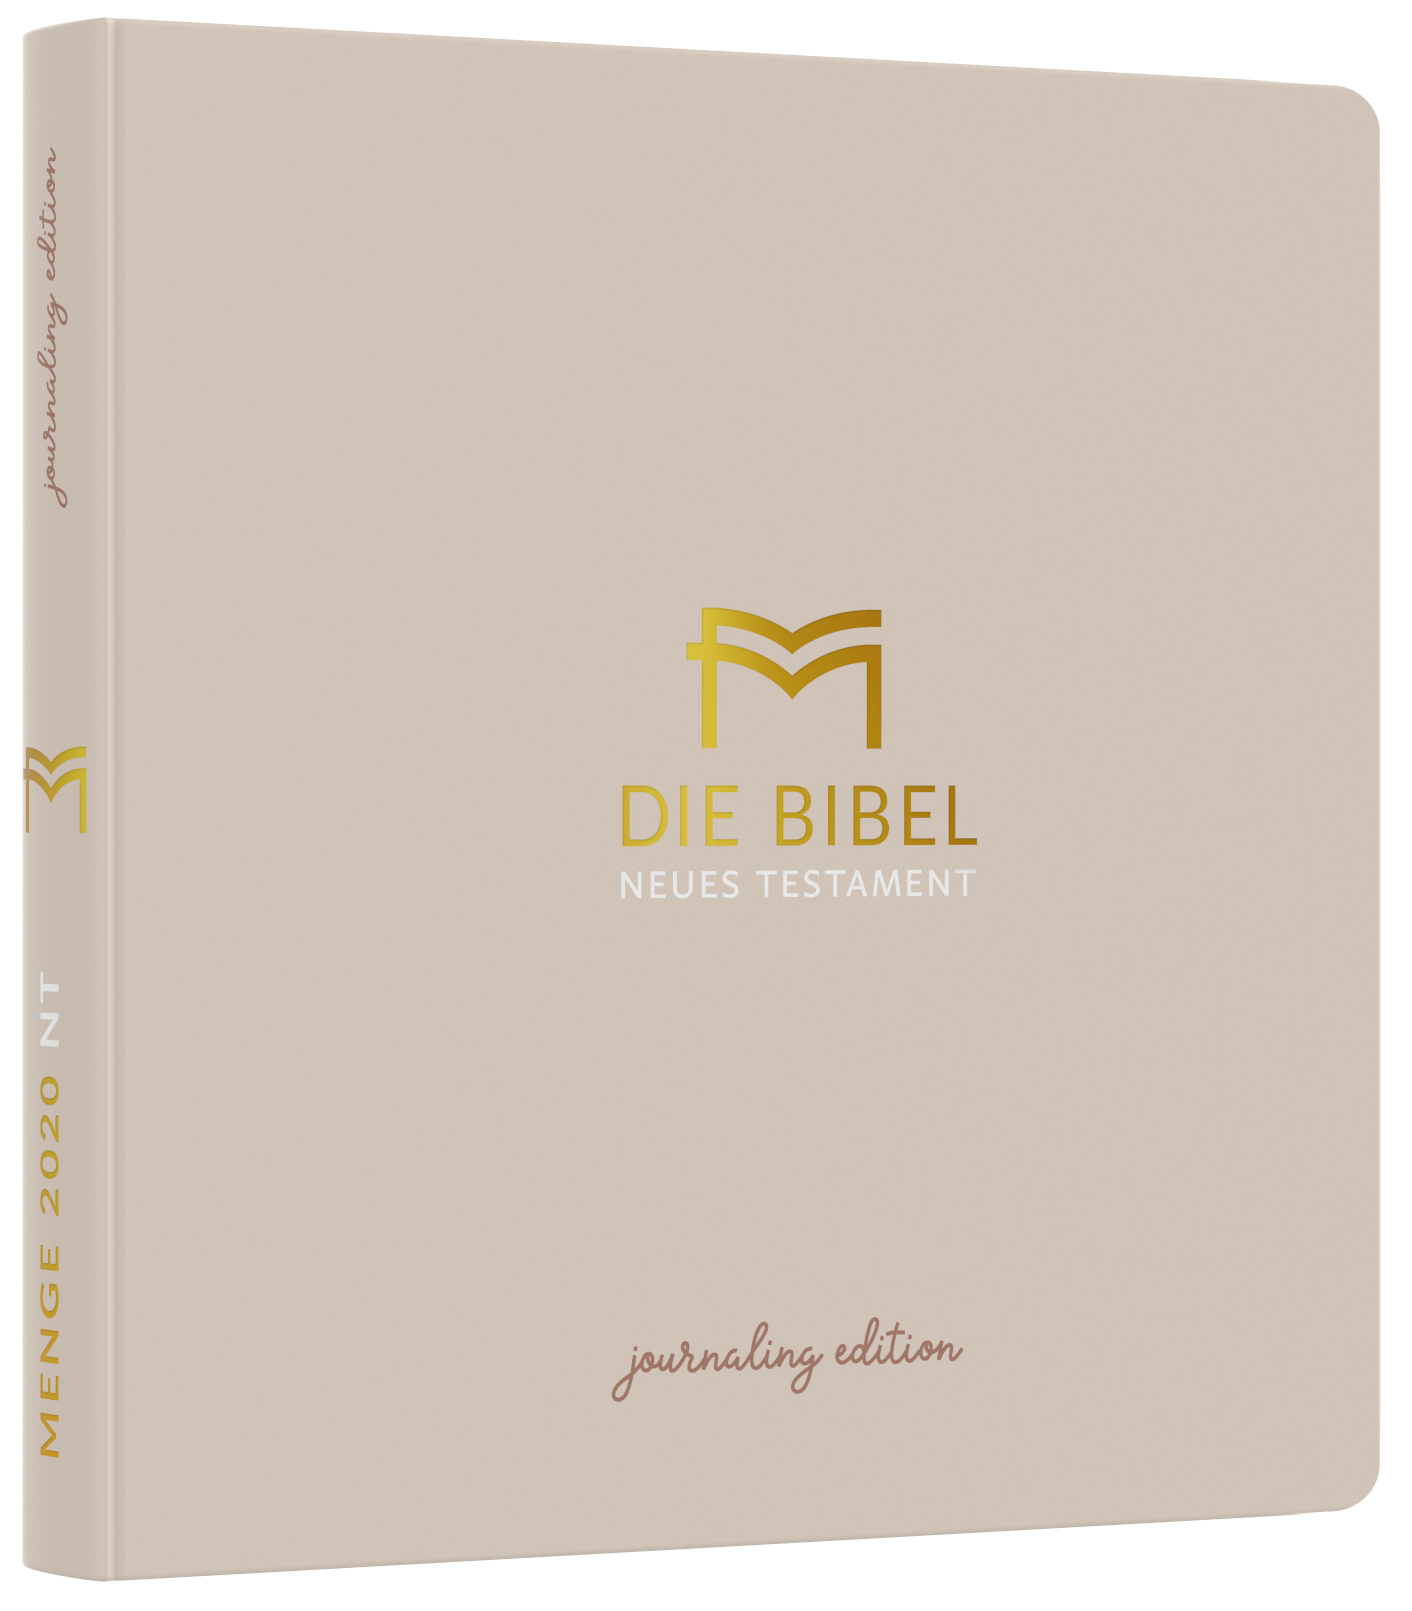 Menge 2020 (Bibel) NT – Journaling Edition, Umschlag, Beige